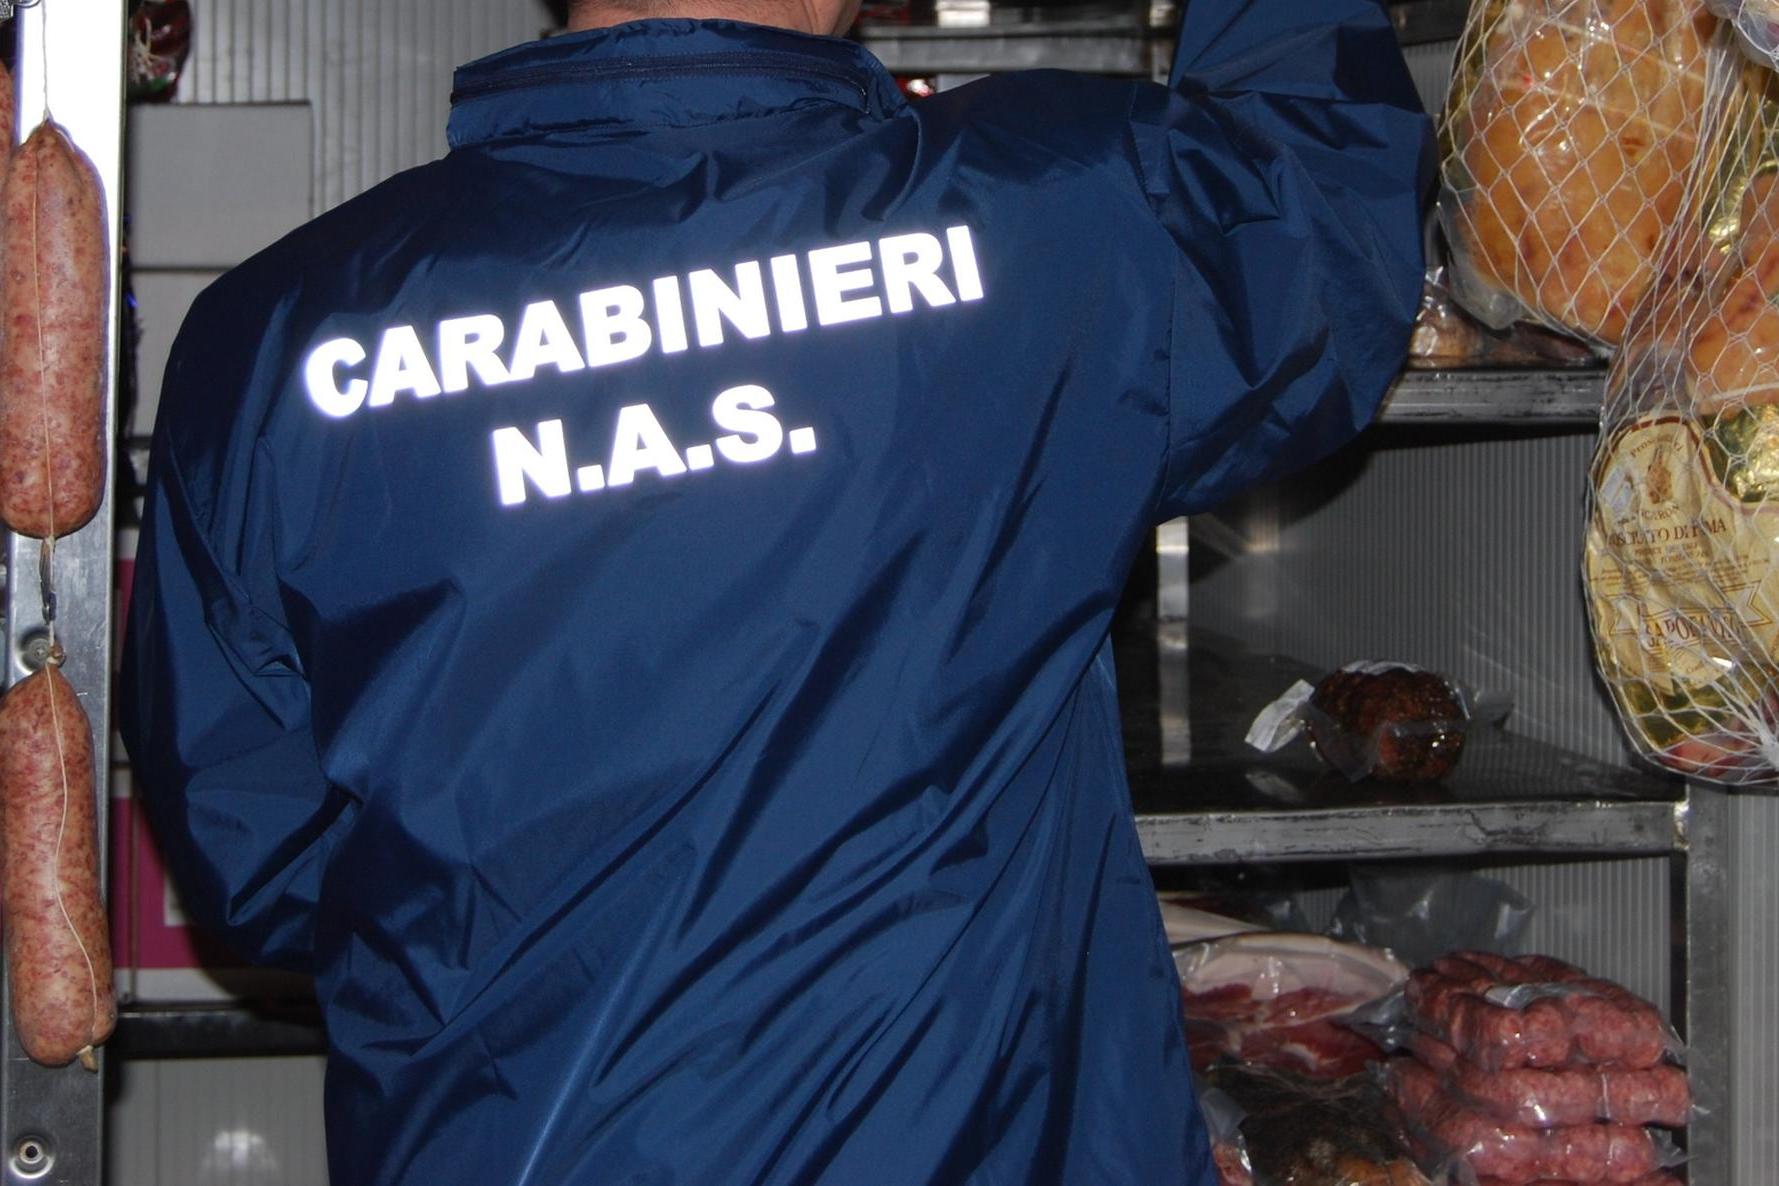 Cibo a rischio contaminazione, nei guai due ristoranti cinesi a Cagliari